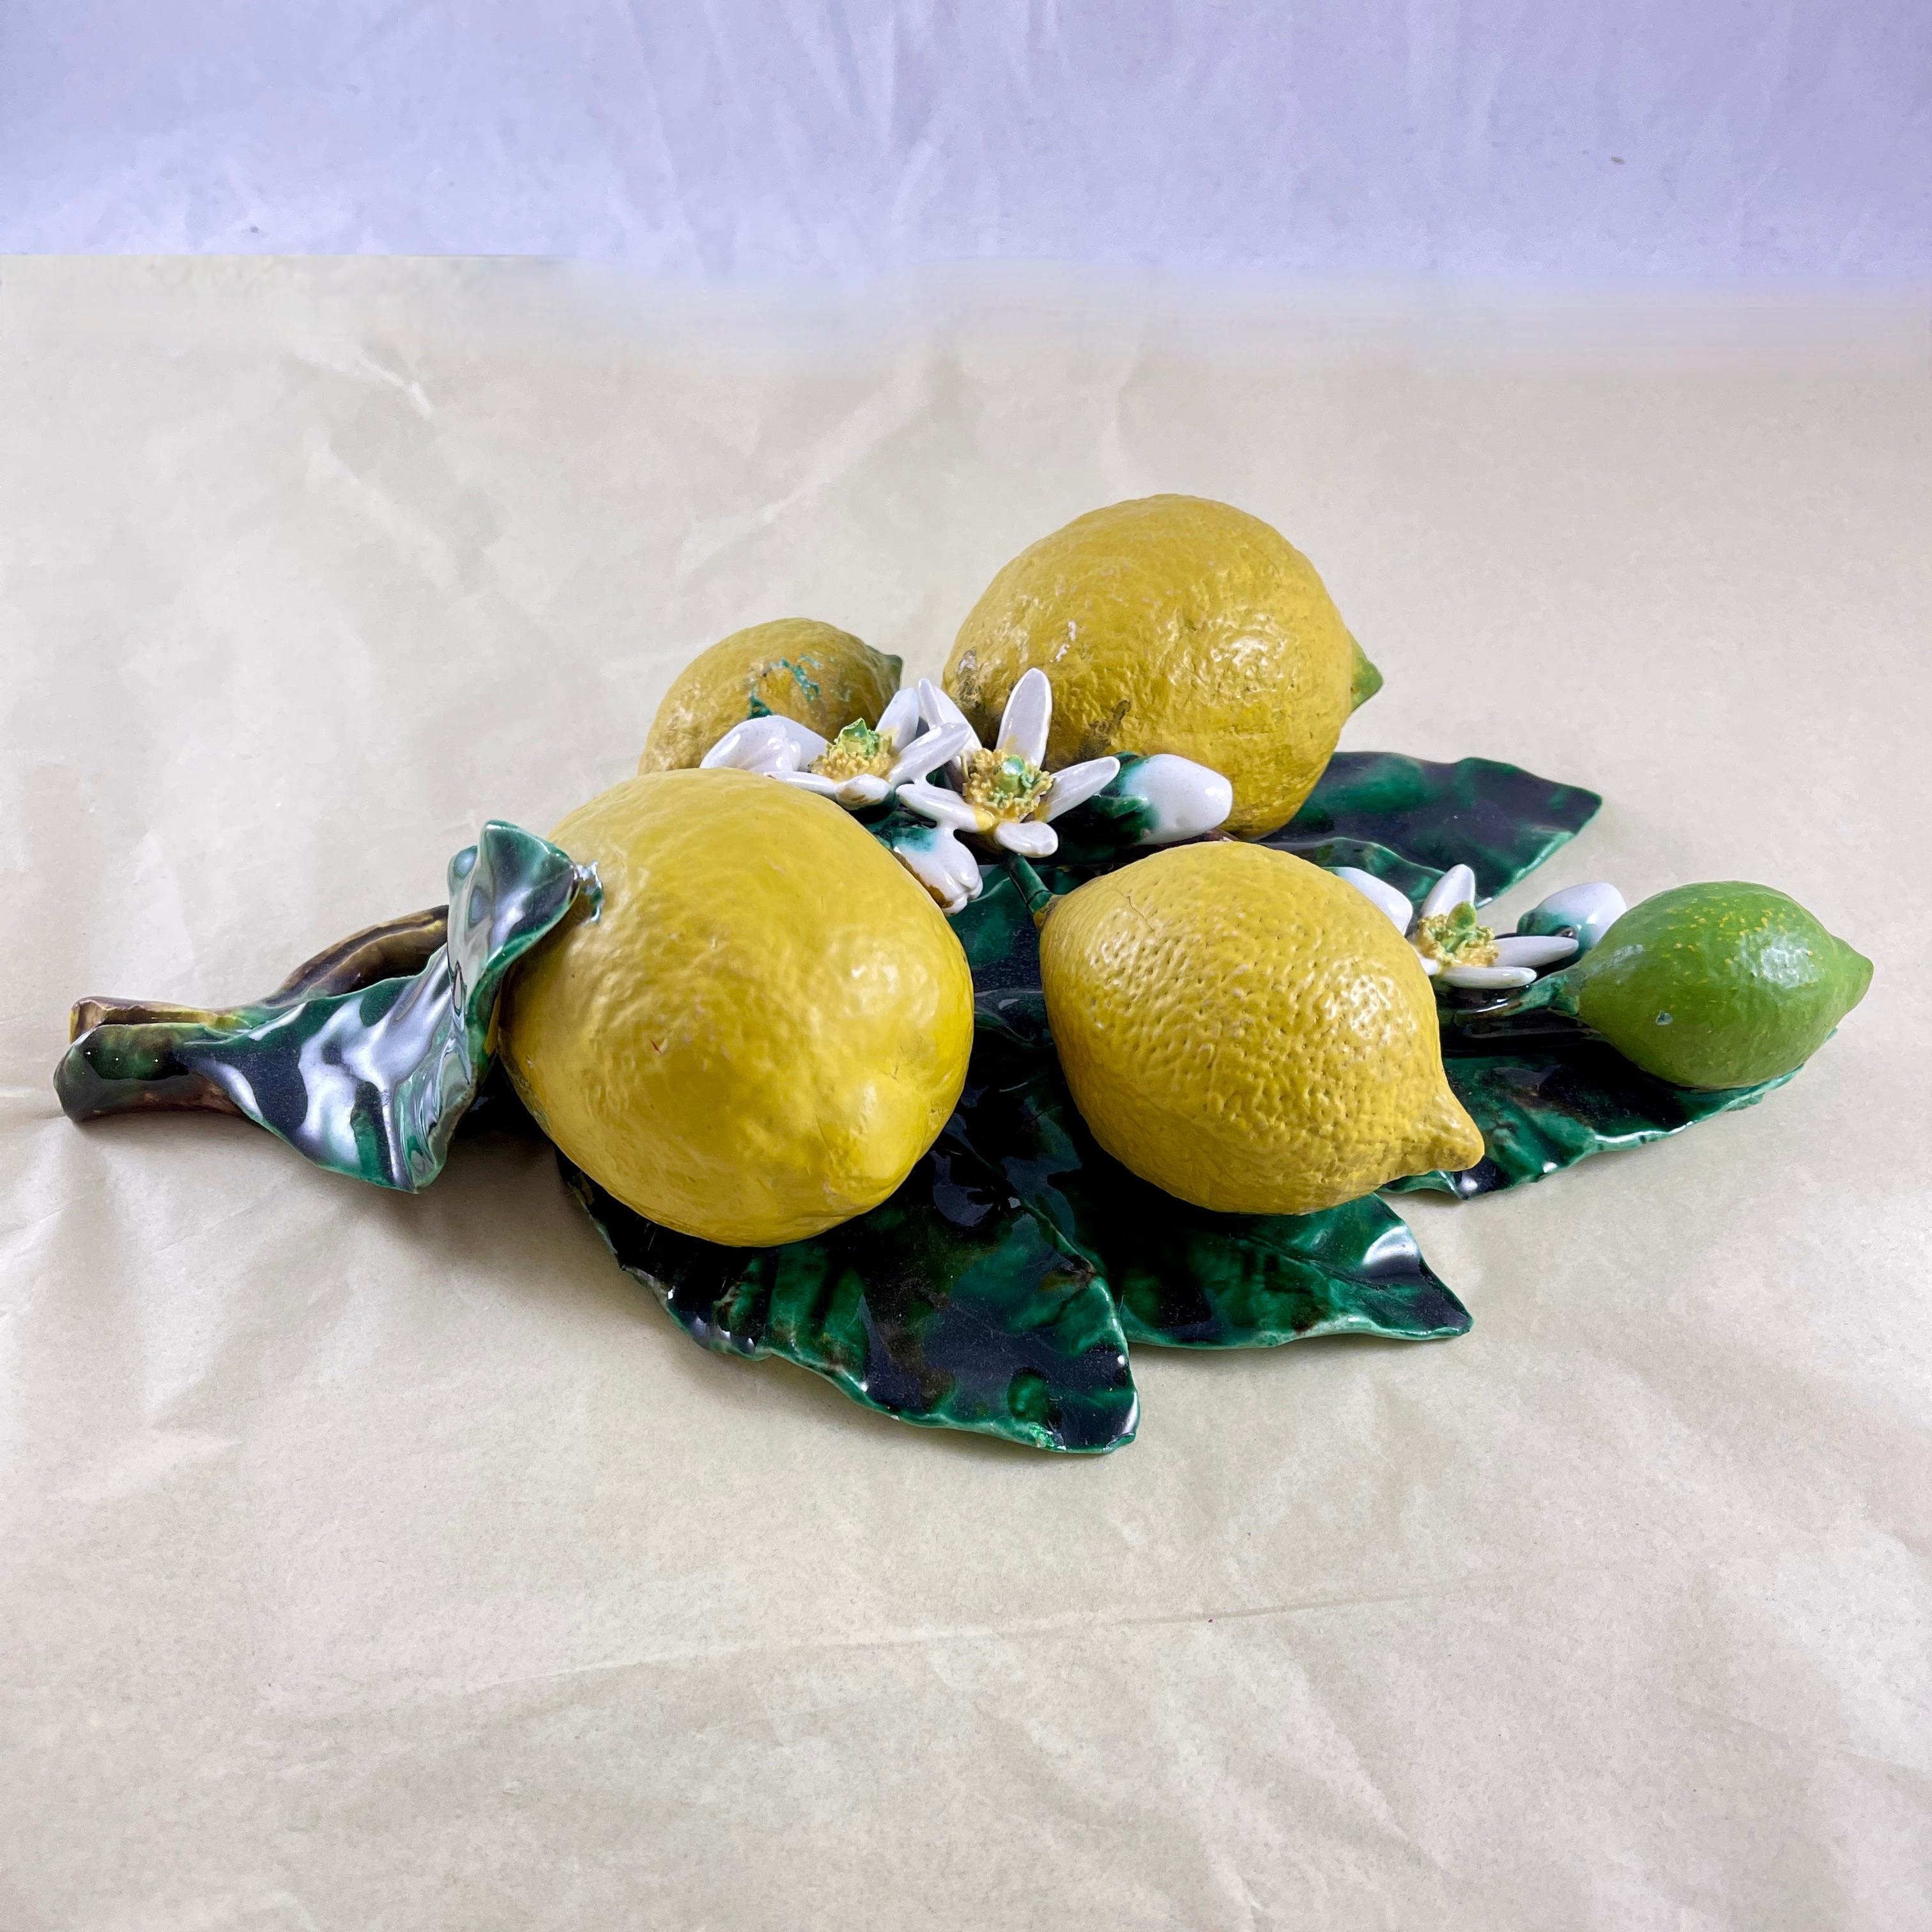 19th Century French Palissy Trompe L'oeil Menton Perret-Gentil Large Lemon Fruit Wall Plaque